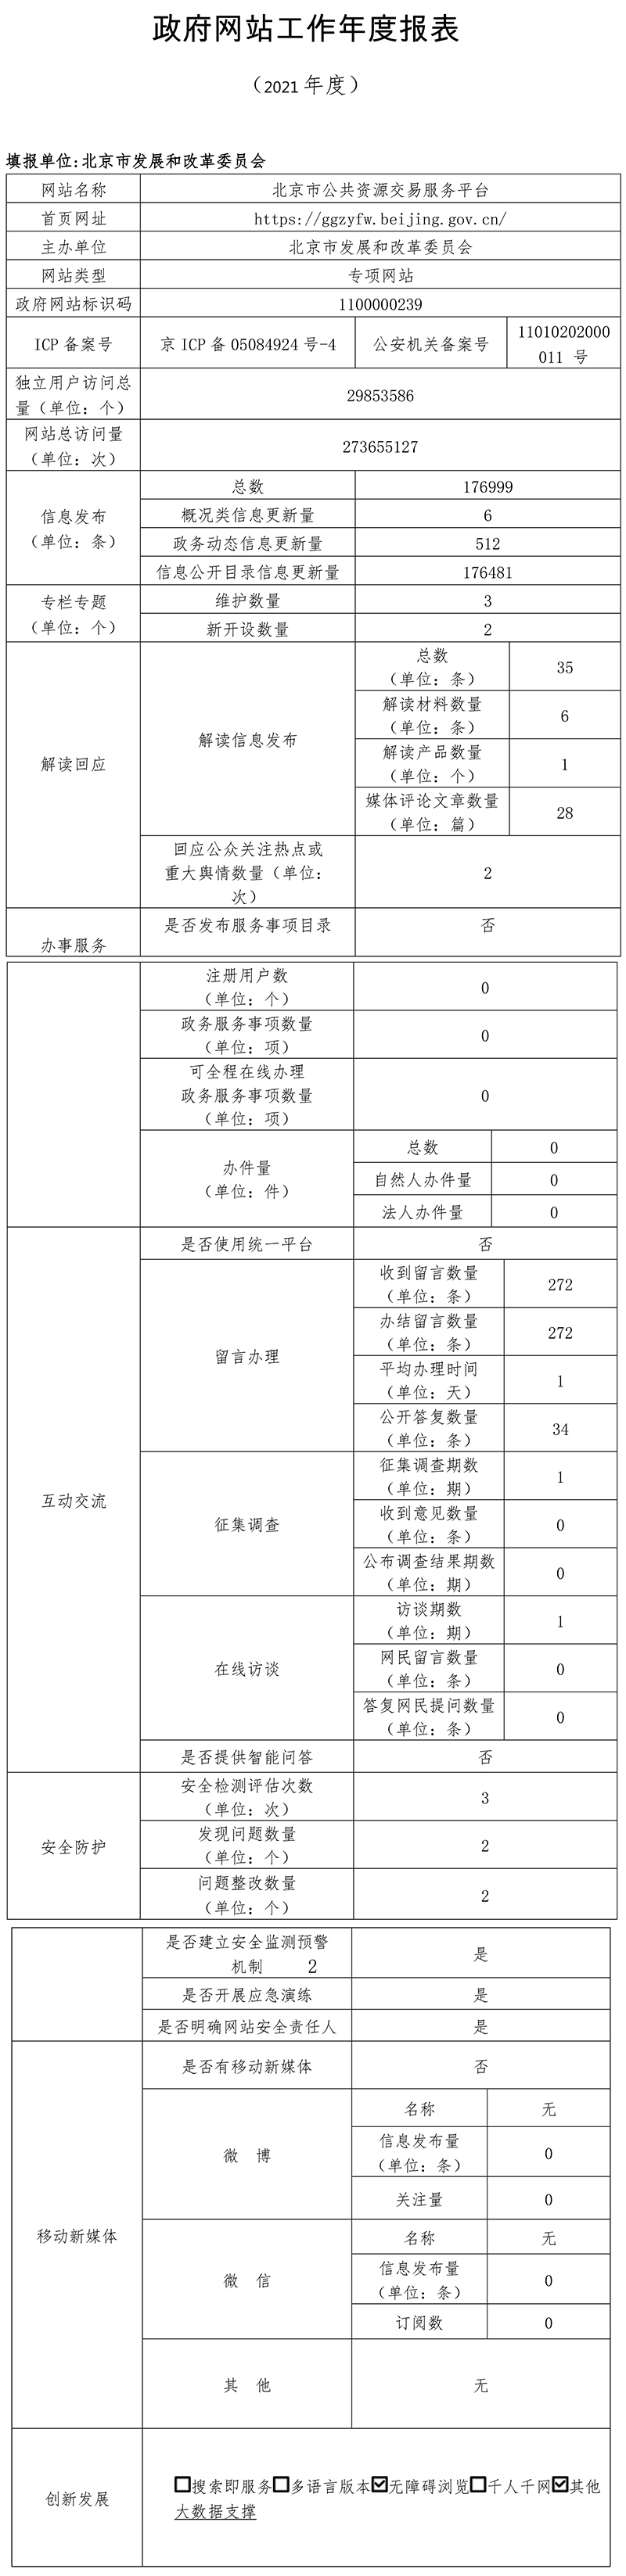 北京市公共資源交易服務平臺2021年政府網站年度工作報表